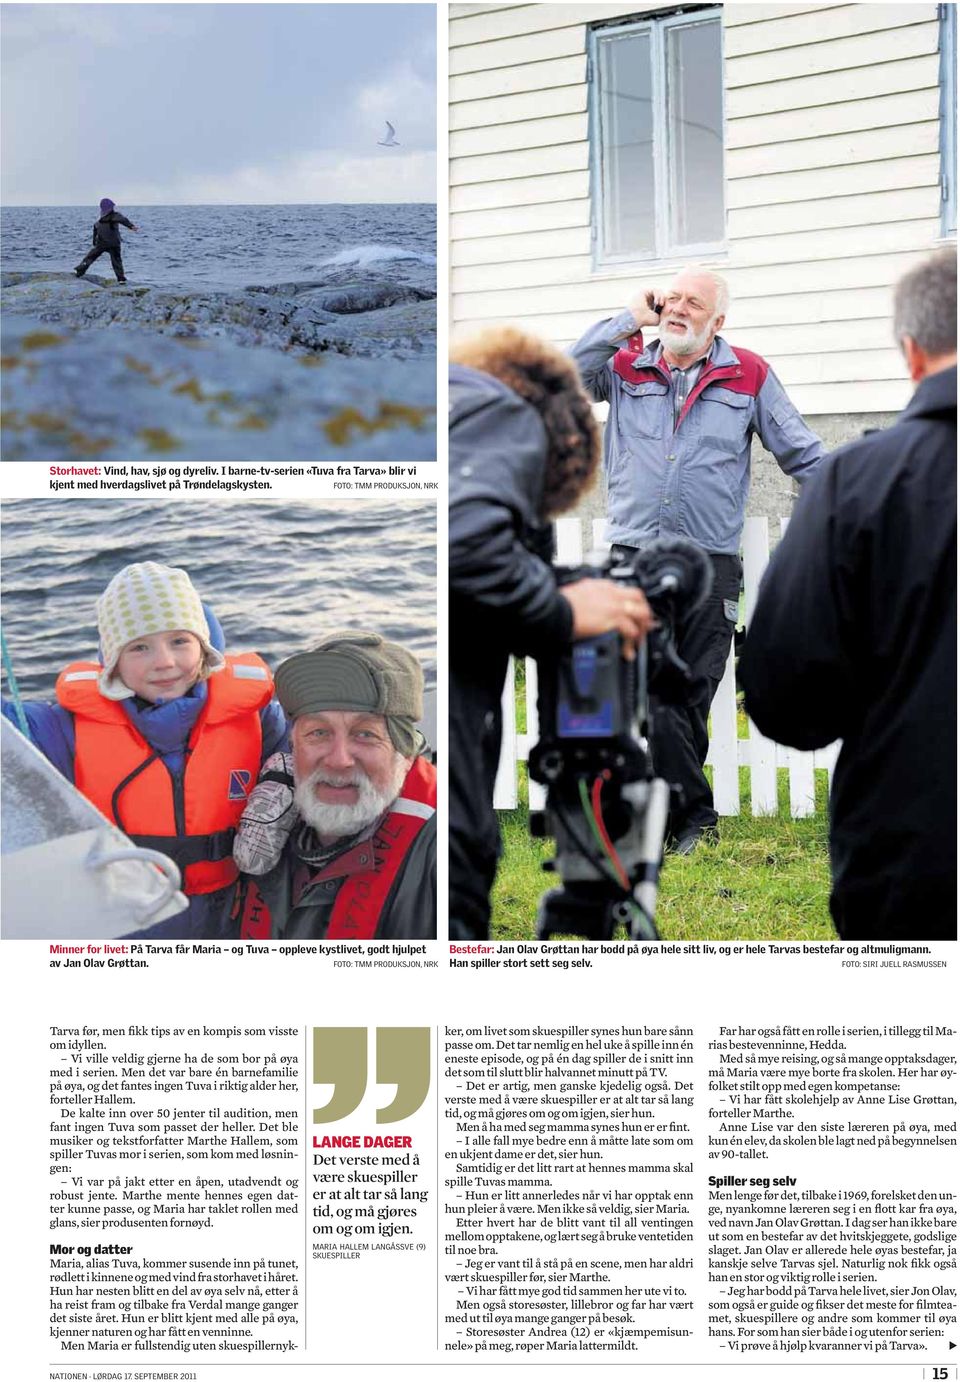 FOTO: TMM PRODUKSJON, NRK Bestefar: Jan Olav Grøttan har bodd på øya hele sitt liv, og er hele Tarvas bestefar og altmuligmann. Han spiller stort sett seg selv.